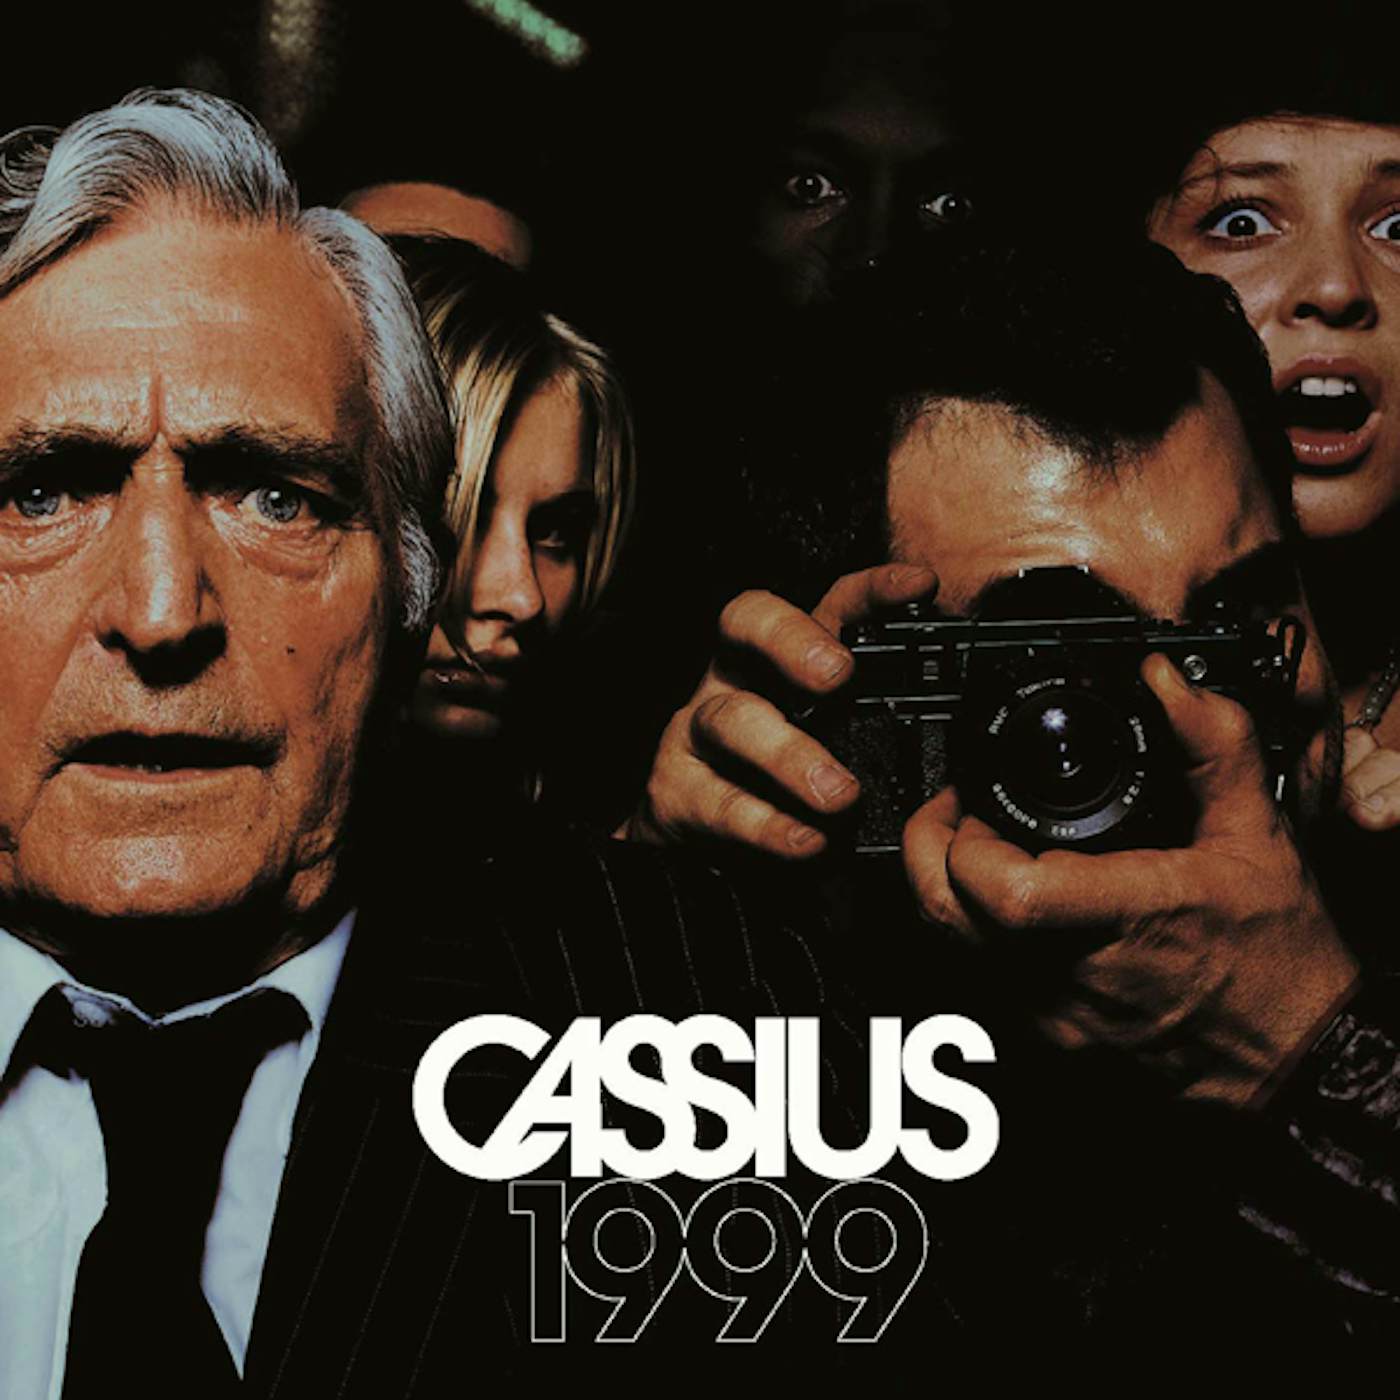 Cassius 1999 CD